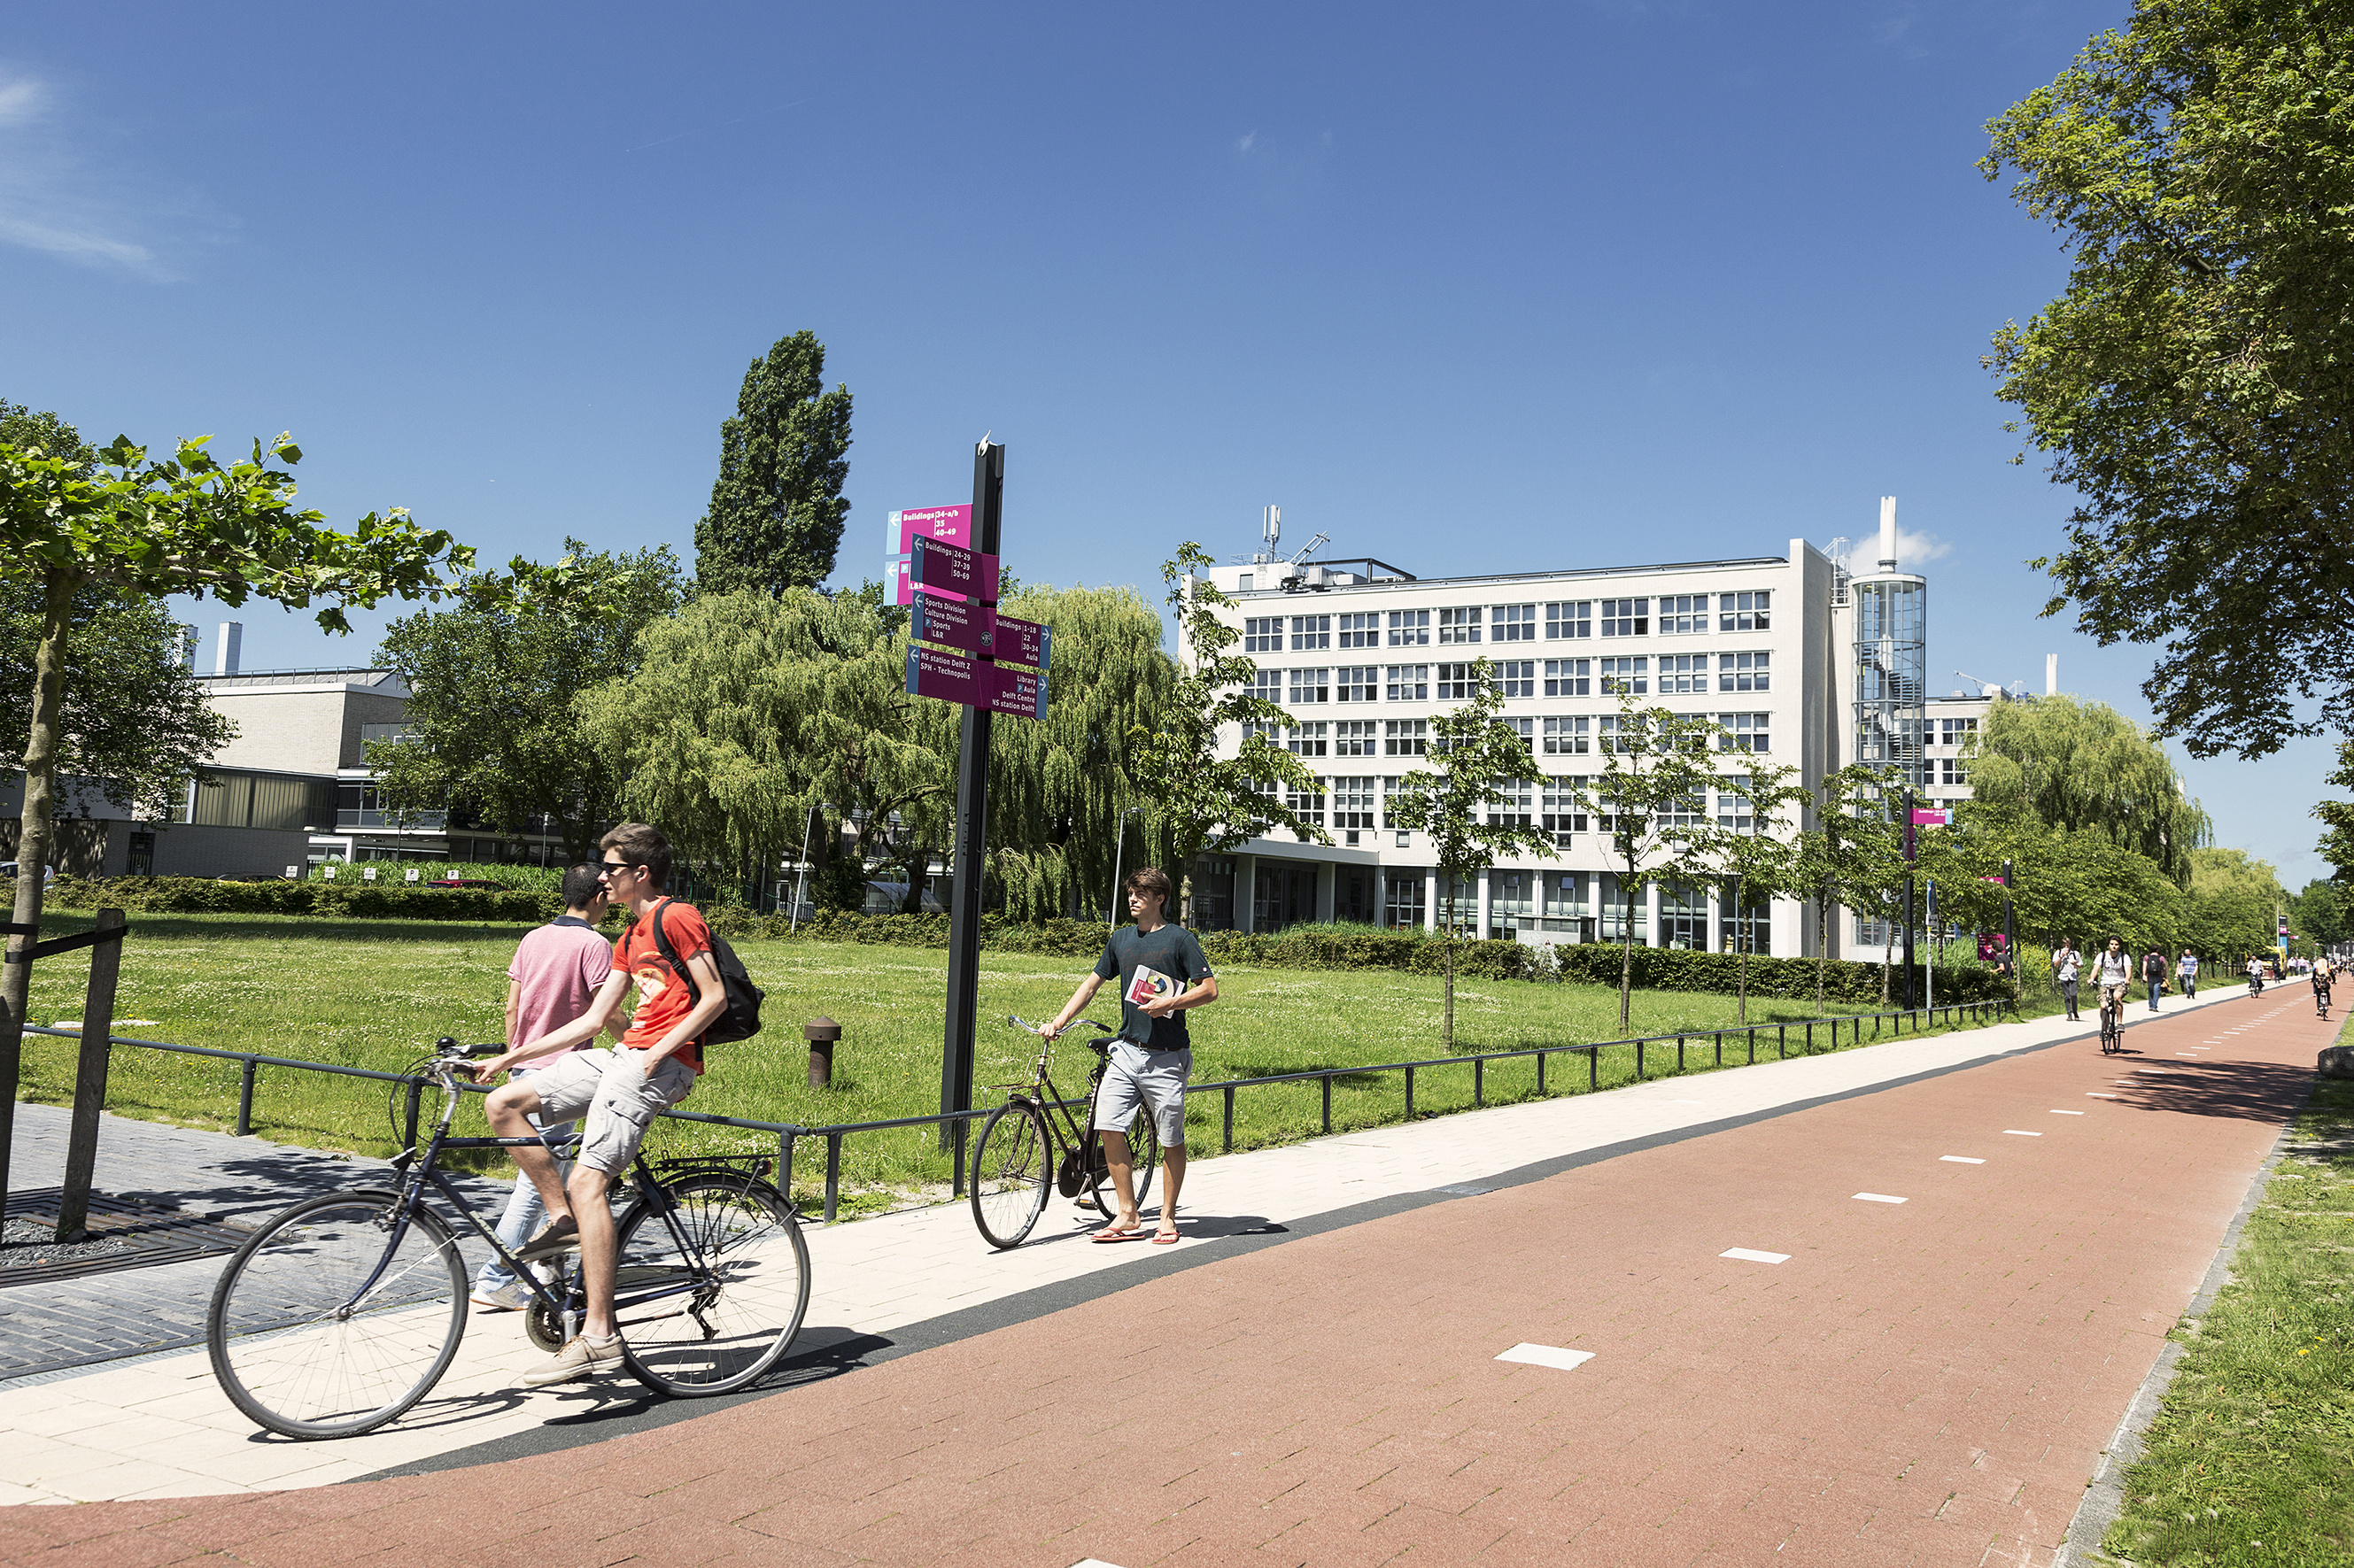 Нидерланды сравнительно недавно вышли на международную арену образования, но Делфтский технический университет уже значится в топ-100 мировых вузов